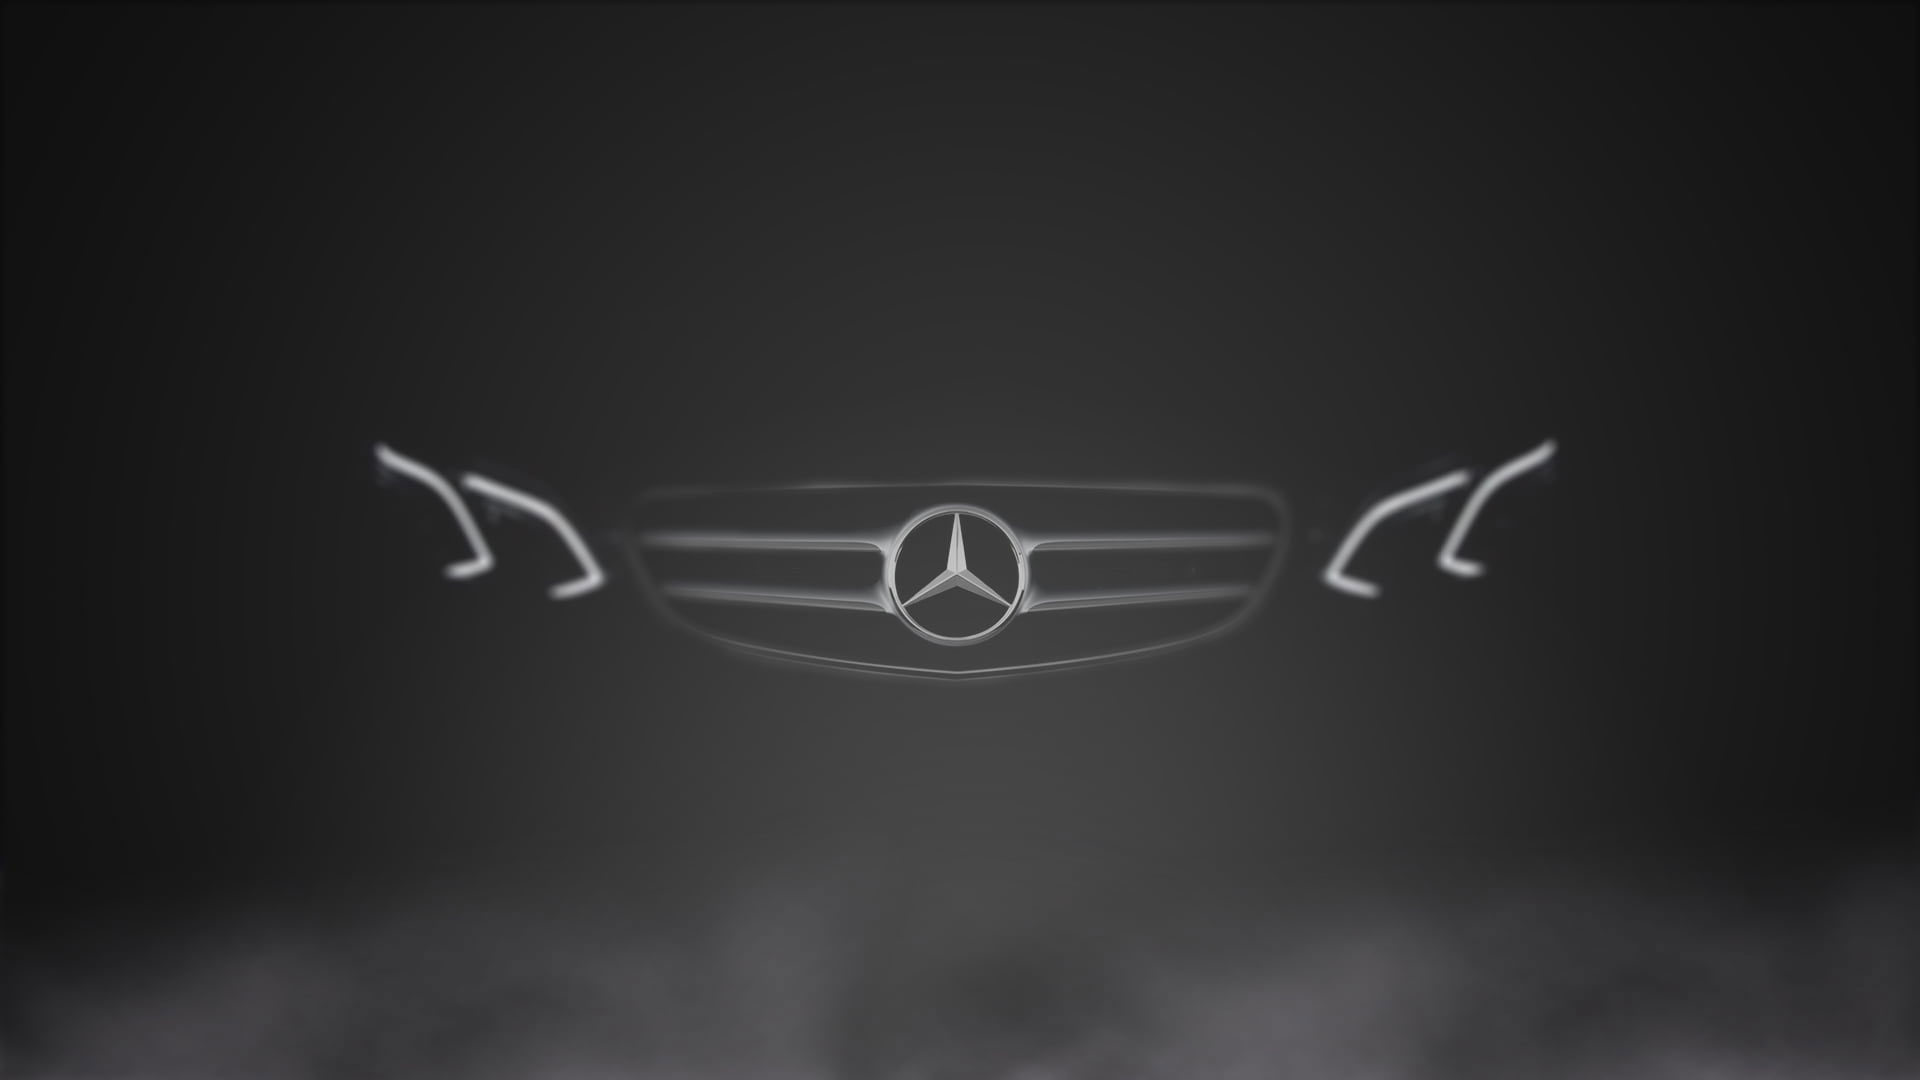 Wallpaper Mercedes Benz E Class, Black Background